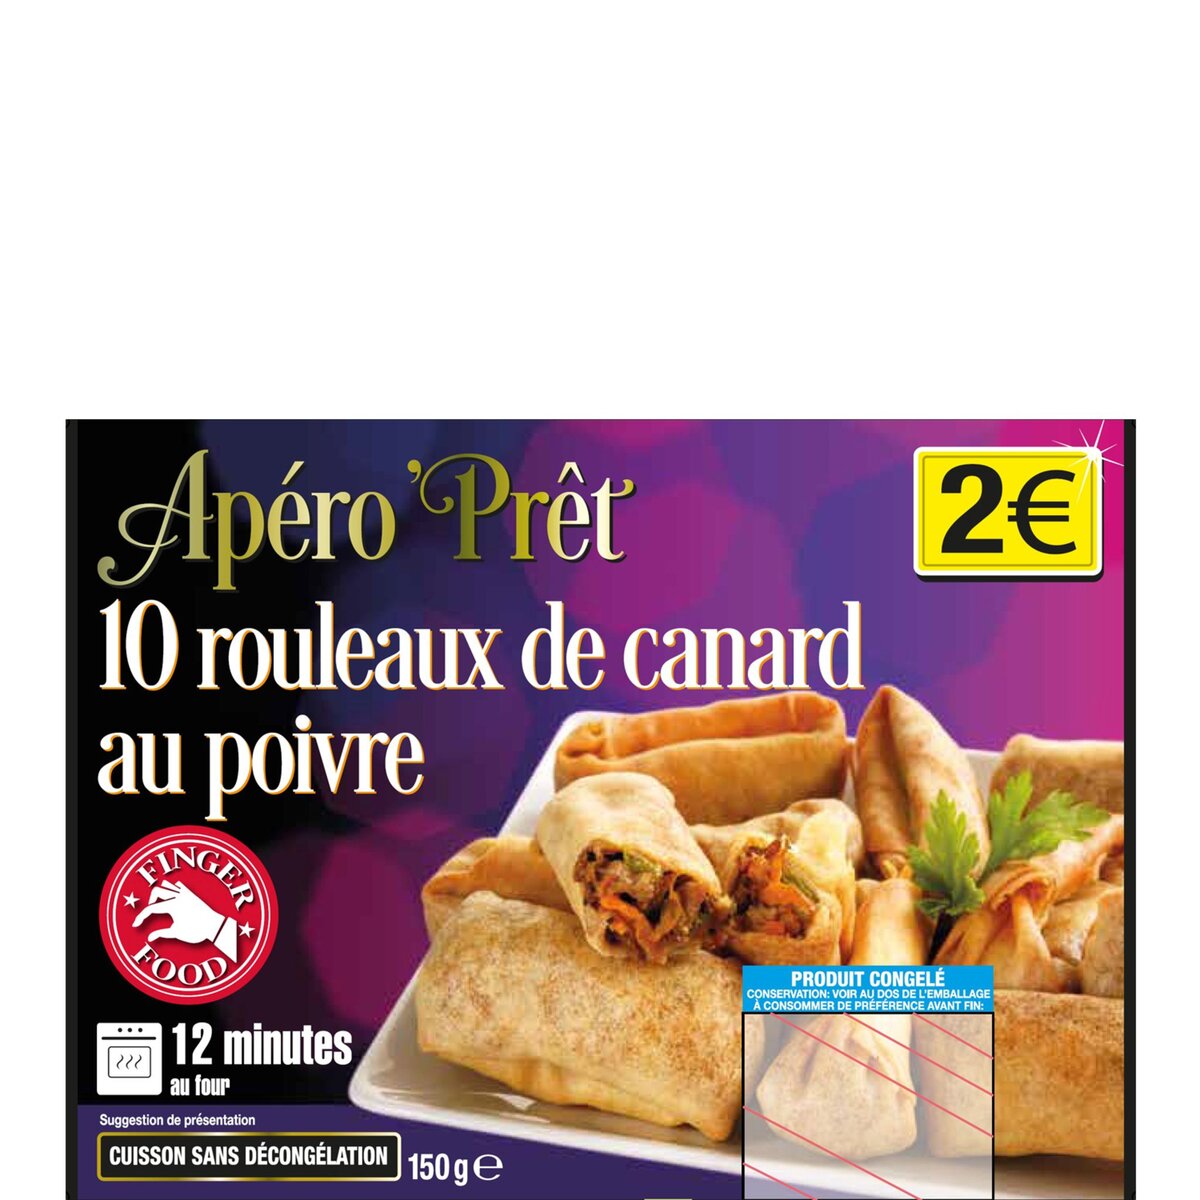 APERO'PRET Apéro'Prêt rouleaux de canard au poivre x10 -150g